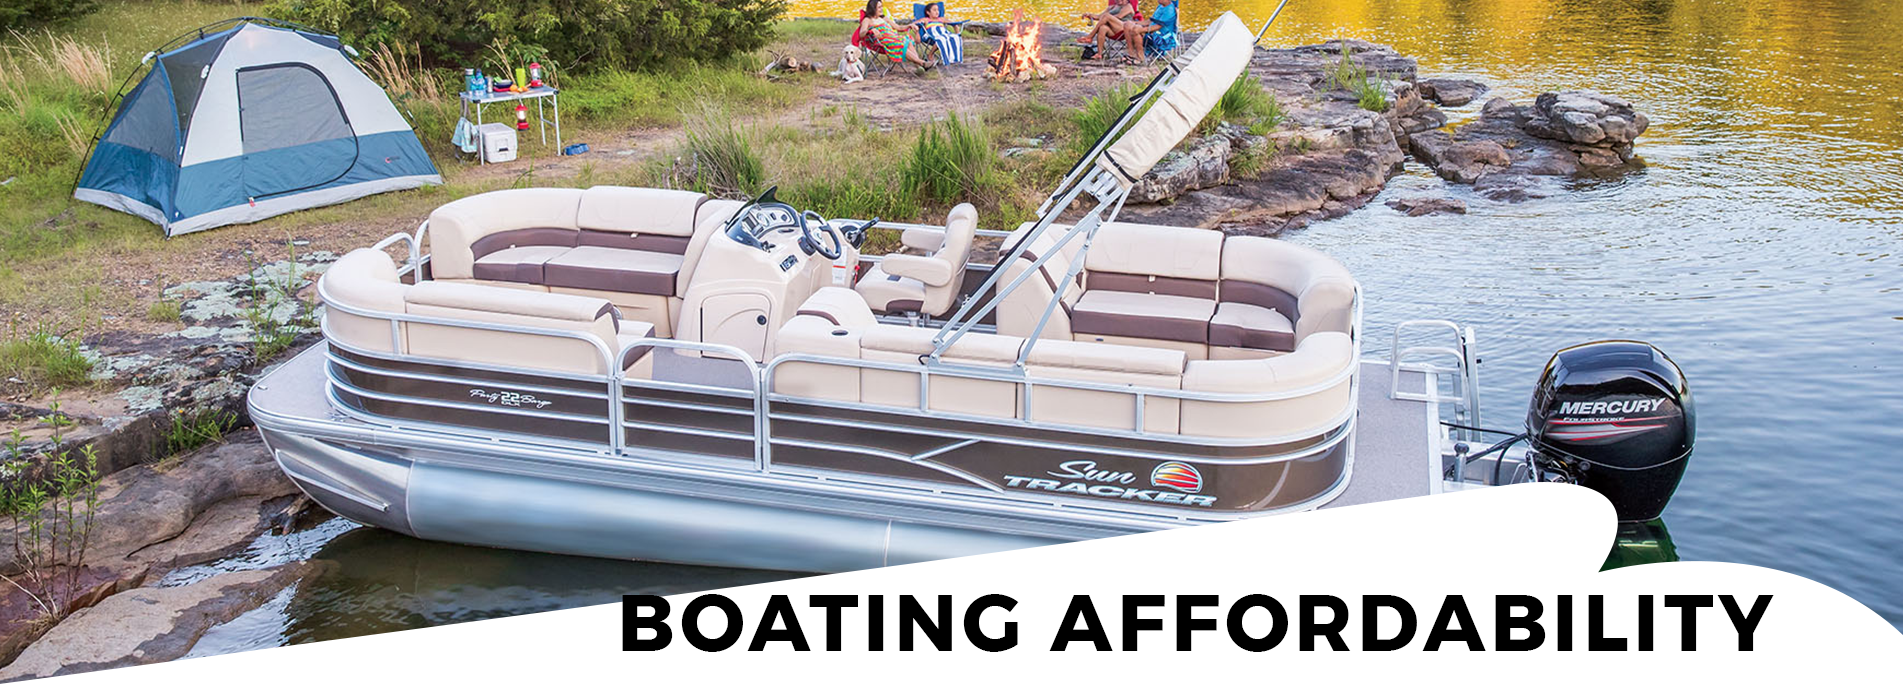 Sun Tracker/ Boating Affordability